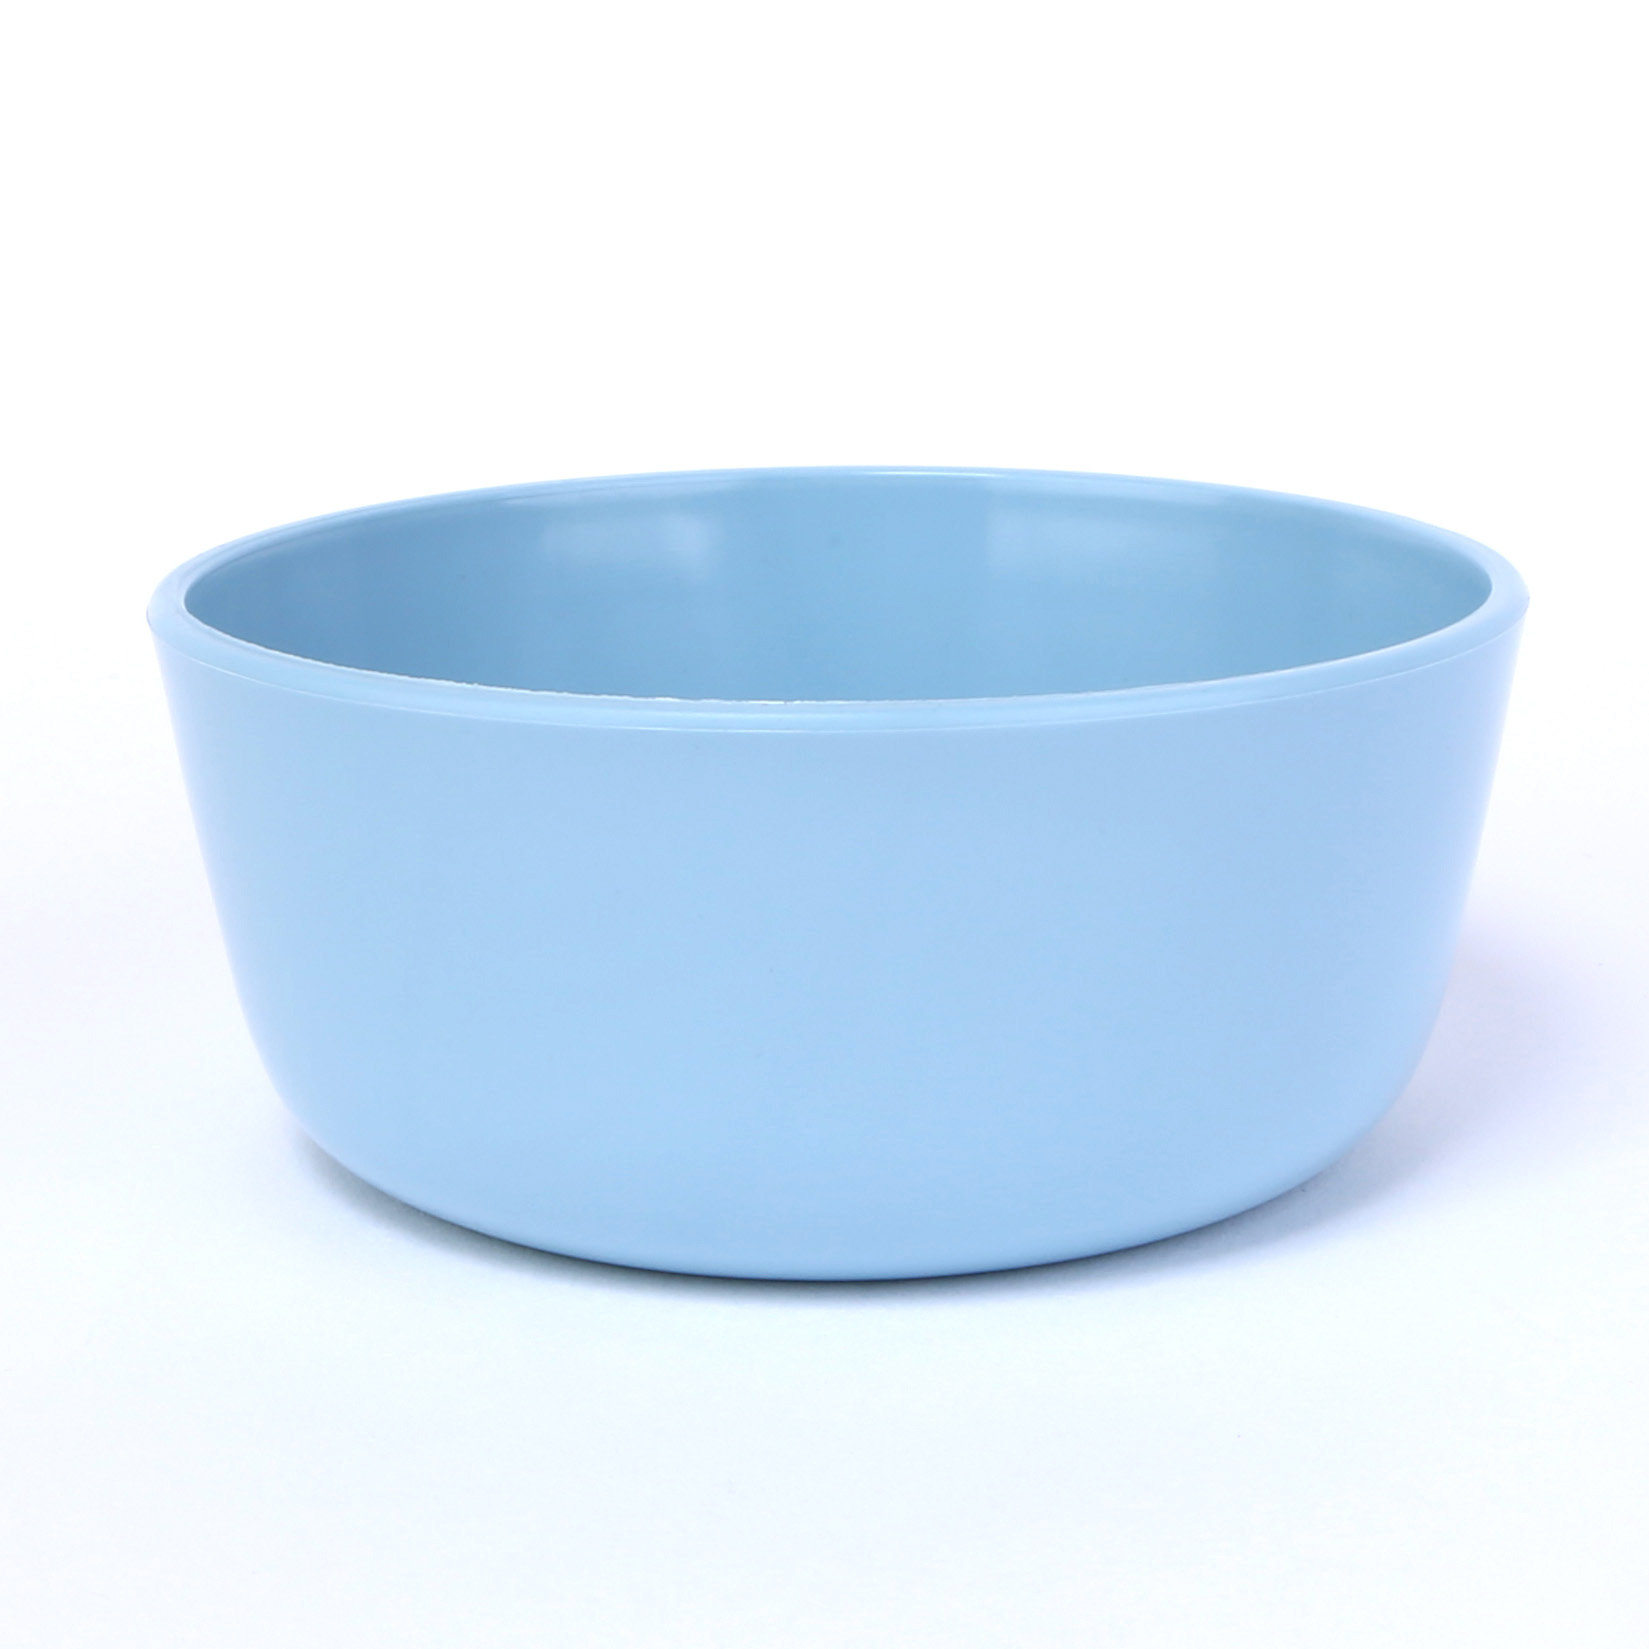 vaLon Zephyr hohe Dessertschale 11 cm aus schadstofffreiem Kunststoff in der Farbe pastellblau.